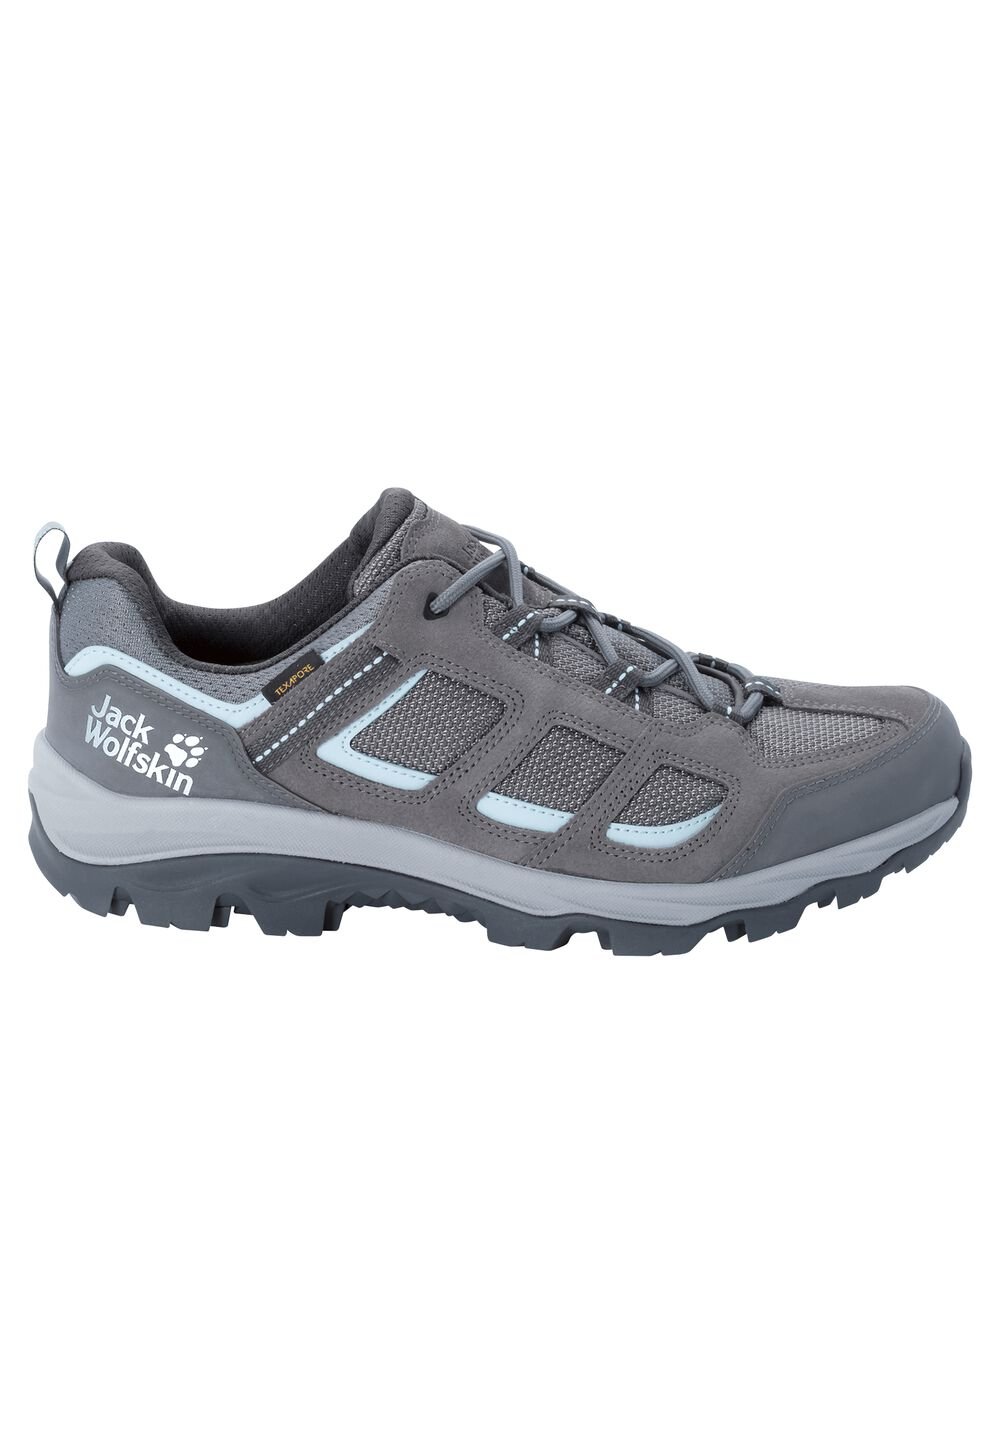 Chaussures de randonnée imperméables femmes Vojo 3 Texapore Low Women 6 gris tarmac grey / light blu